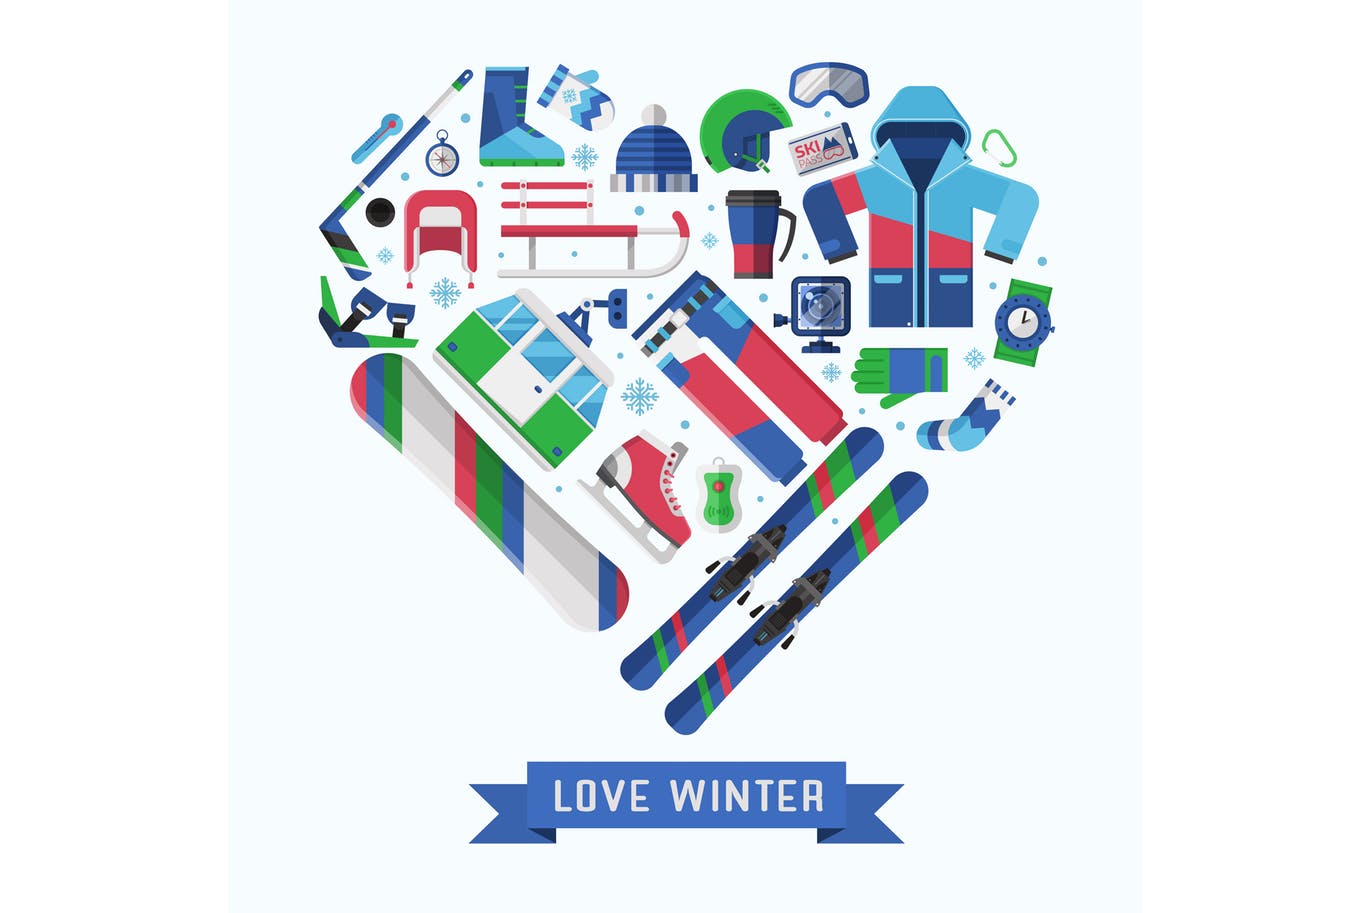 冬季运动主题扁平设计风格心形矢量插画大洋岛精选 Love Winter Sports Heart Print插图